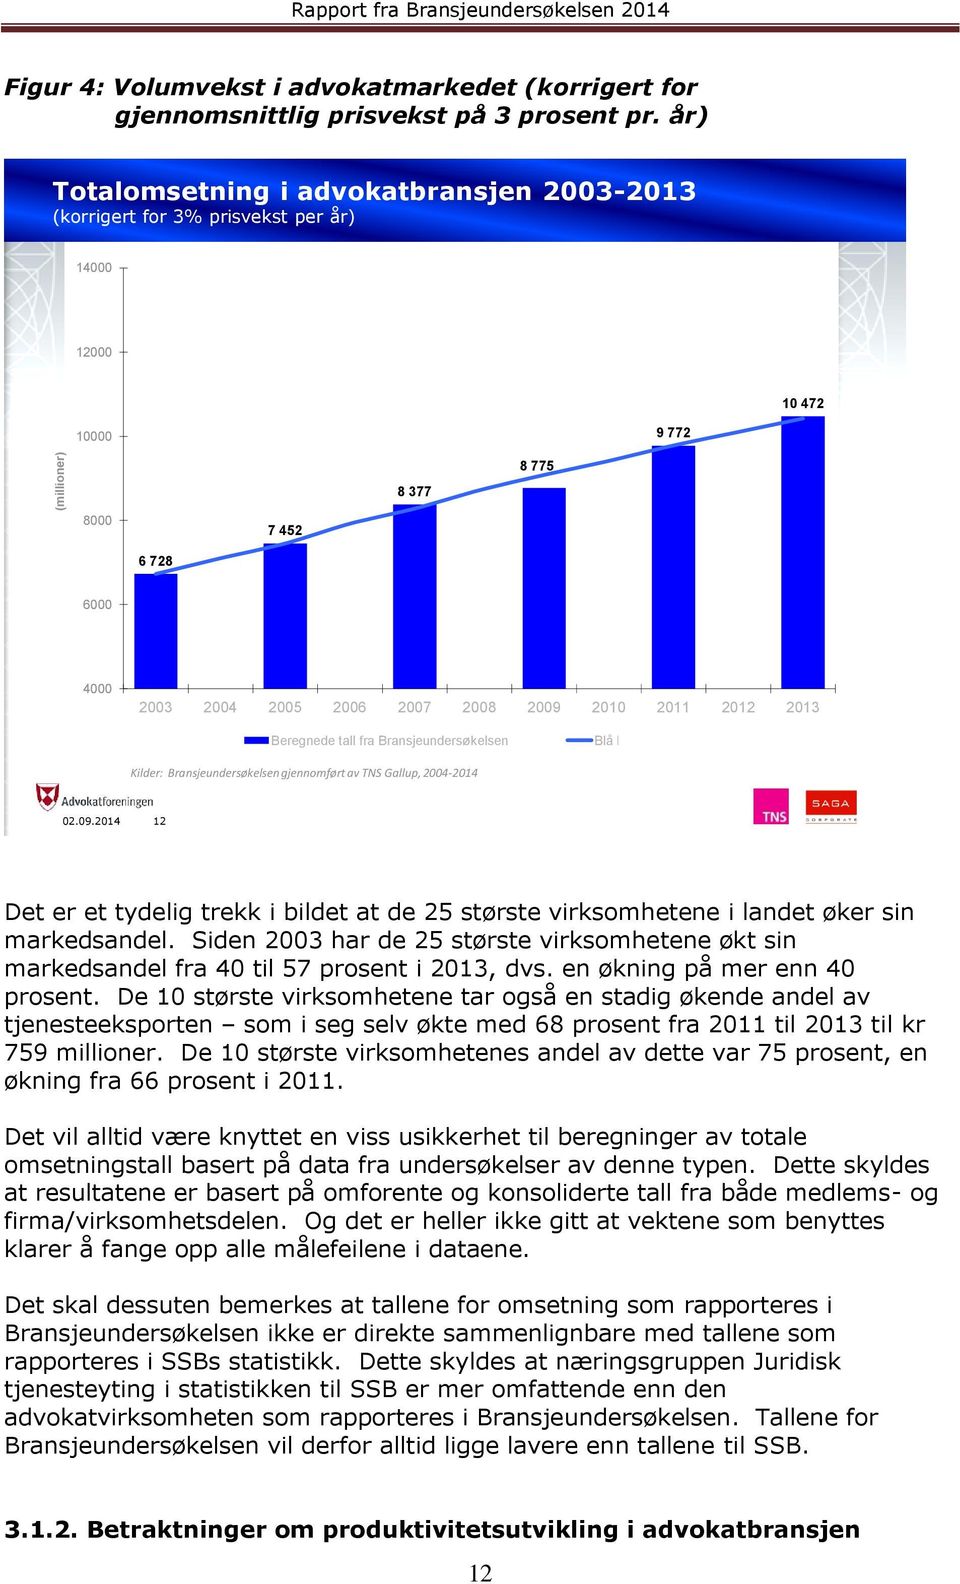 2012 2013 Beregnede tall fra Bransjeundersøkelsen Blå linje Kilder: Bransjeundersøkelsen gjennomført av TNS Gallup, 2004-2014 02.09.